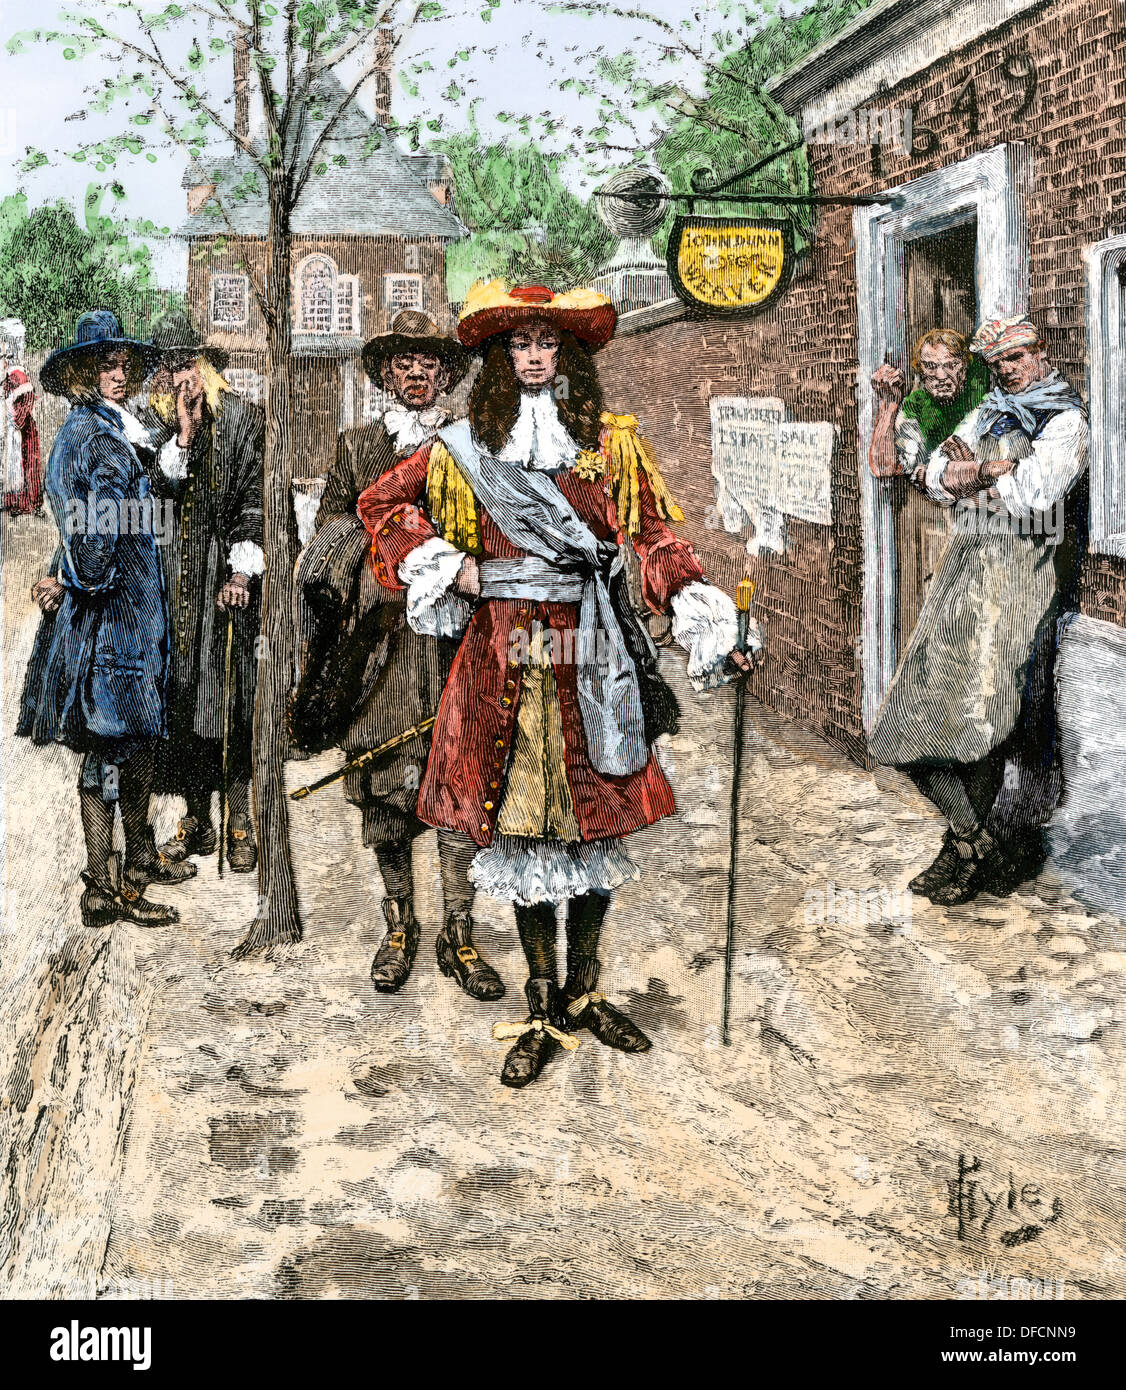 Les citoyens de Boston l'observation d'gouverneur Edmund Andros paradant dans ses plus beaux atours, 1689. À la main, gravure sur bois de Howard Pyle illustration Banque D'Images